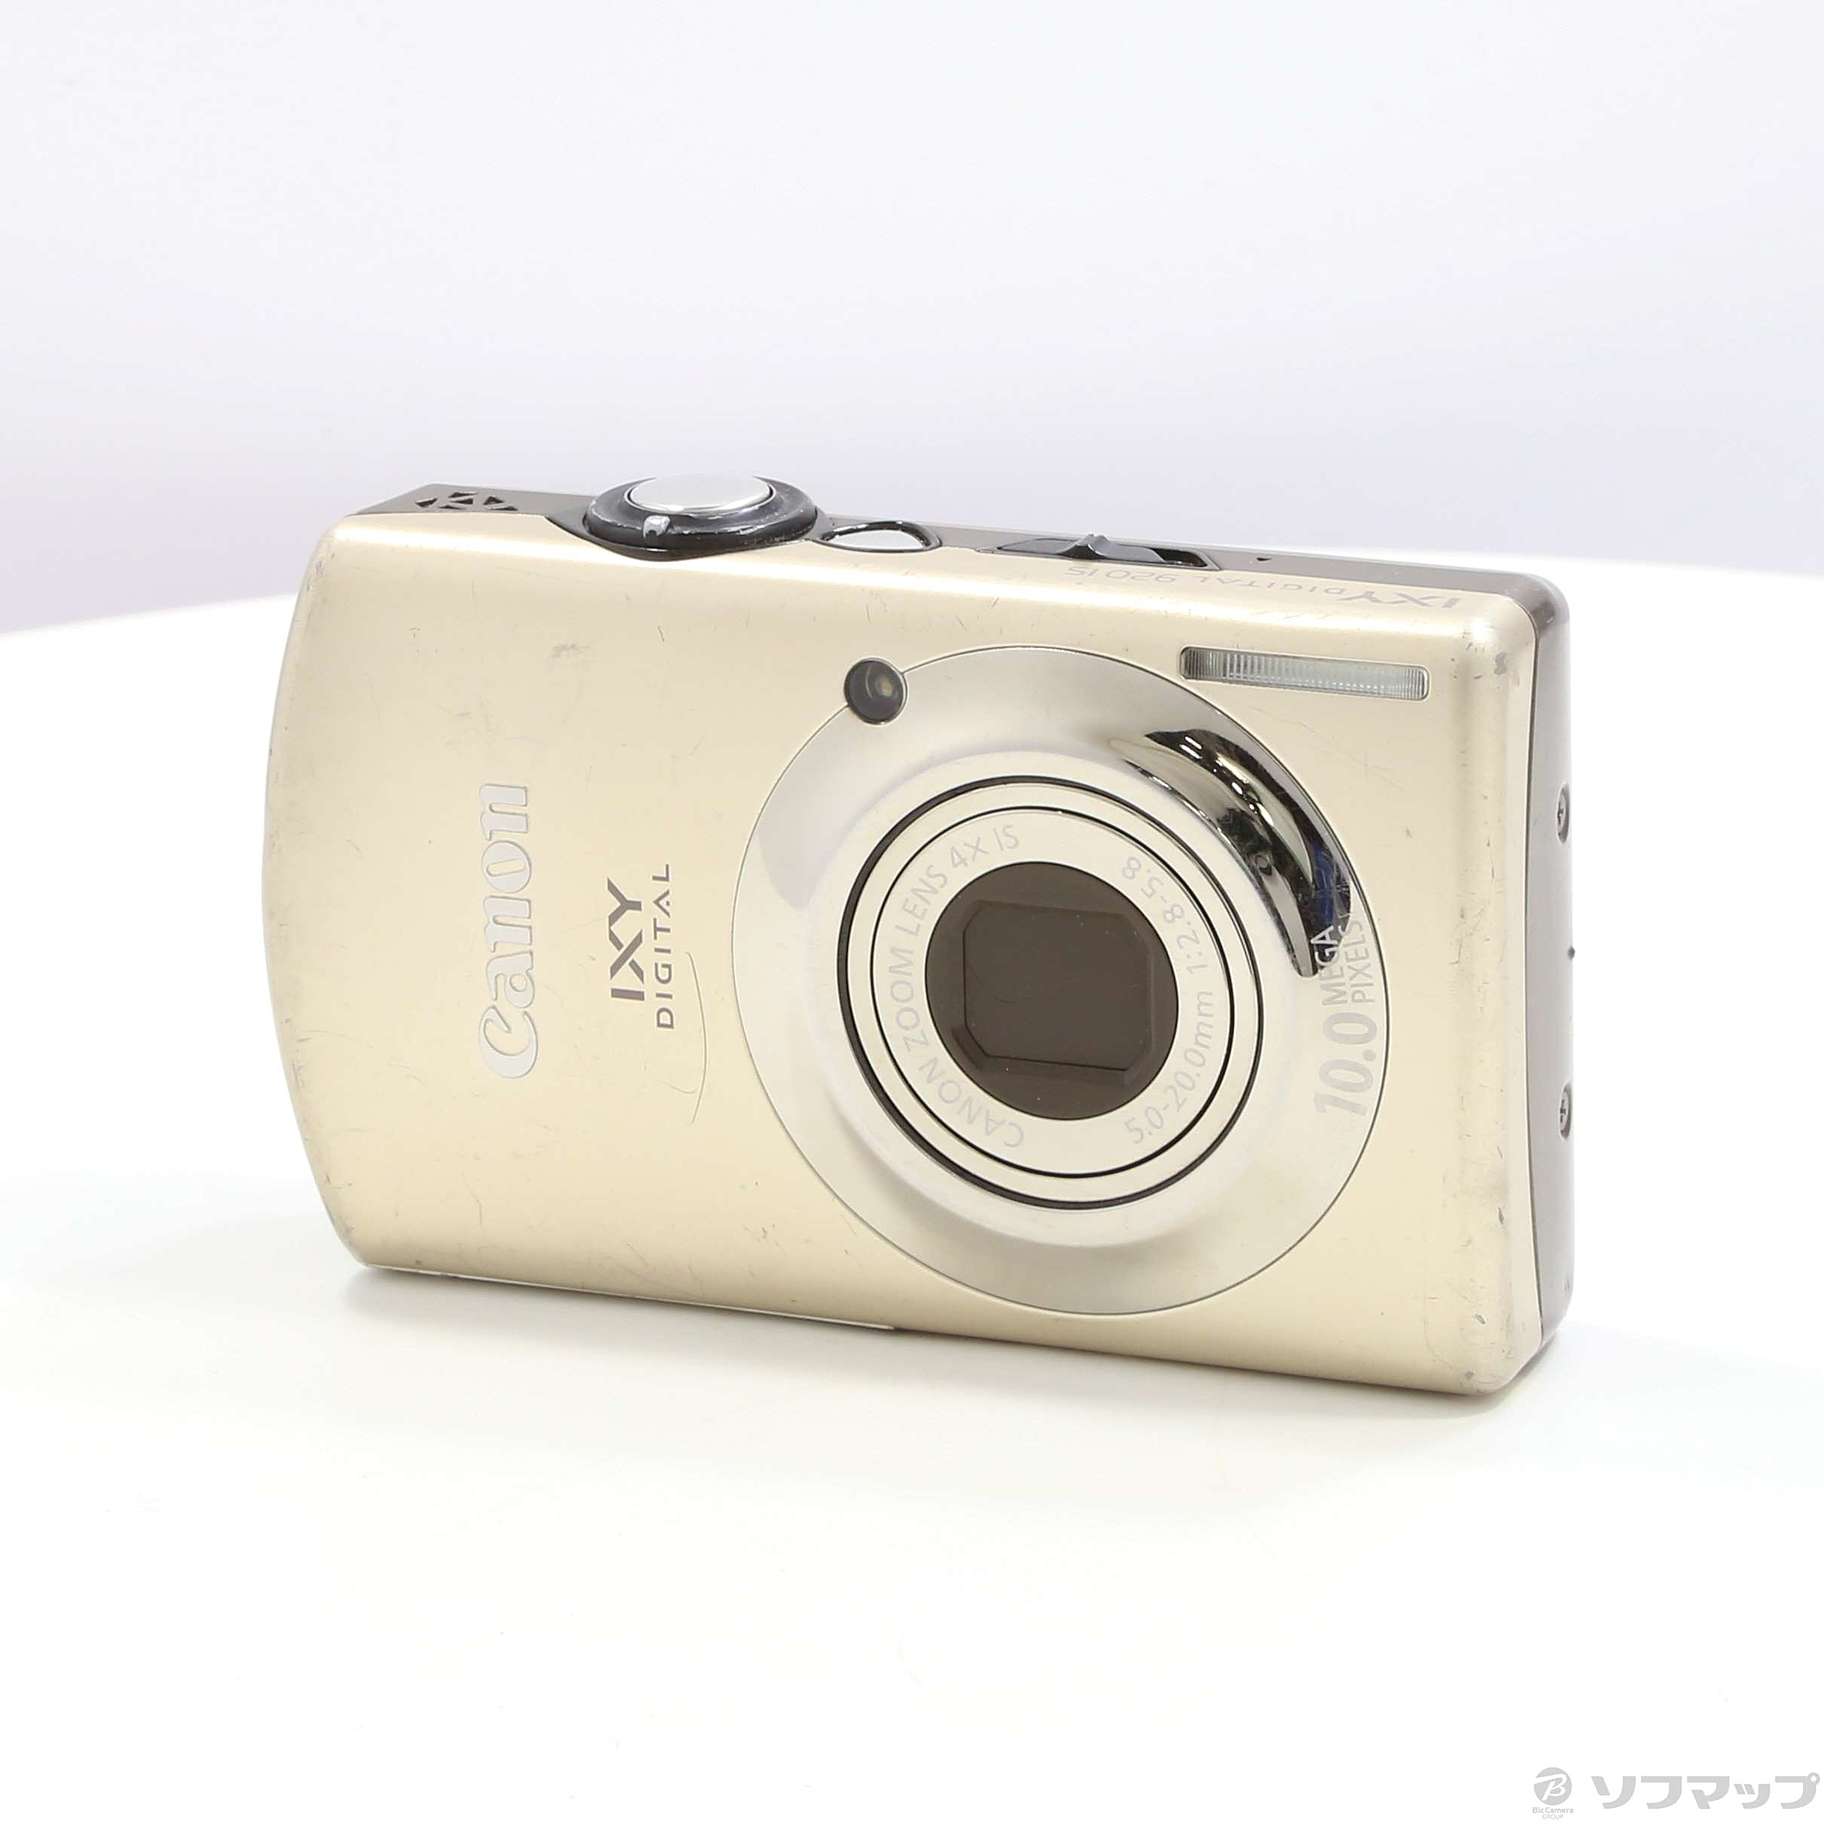 Canon デジタルカメラ IXY DIGITAL (イクシ) 920 IS シルバー IXYD920IS(SL) - 3